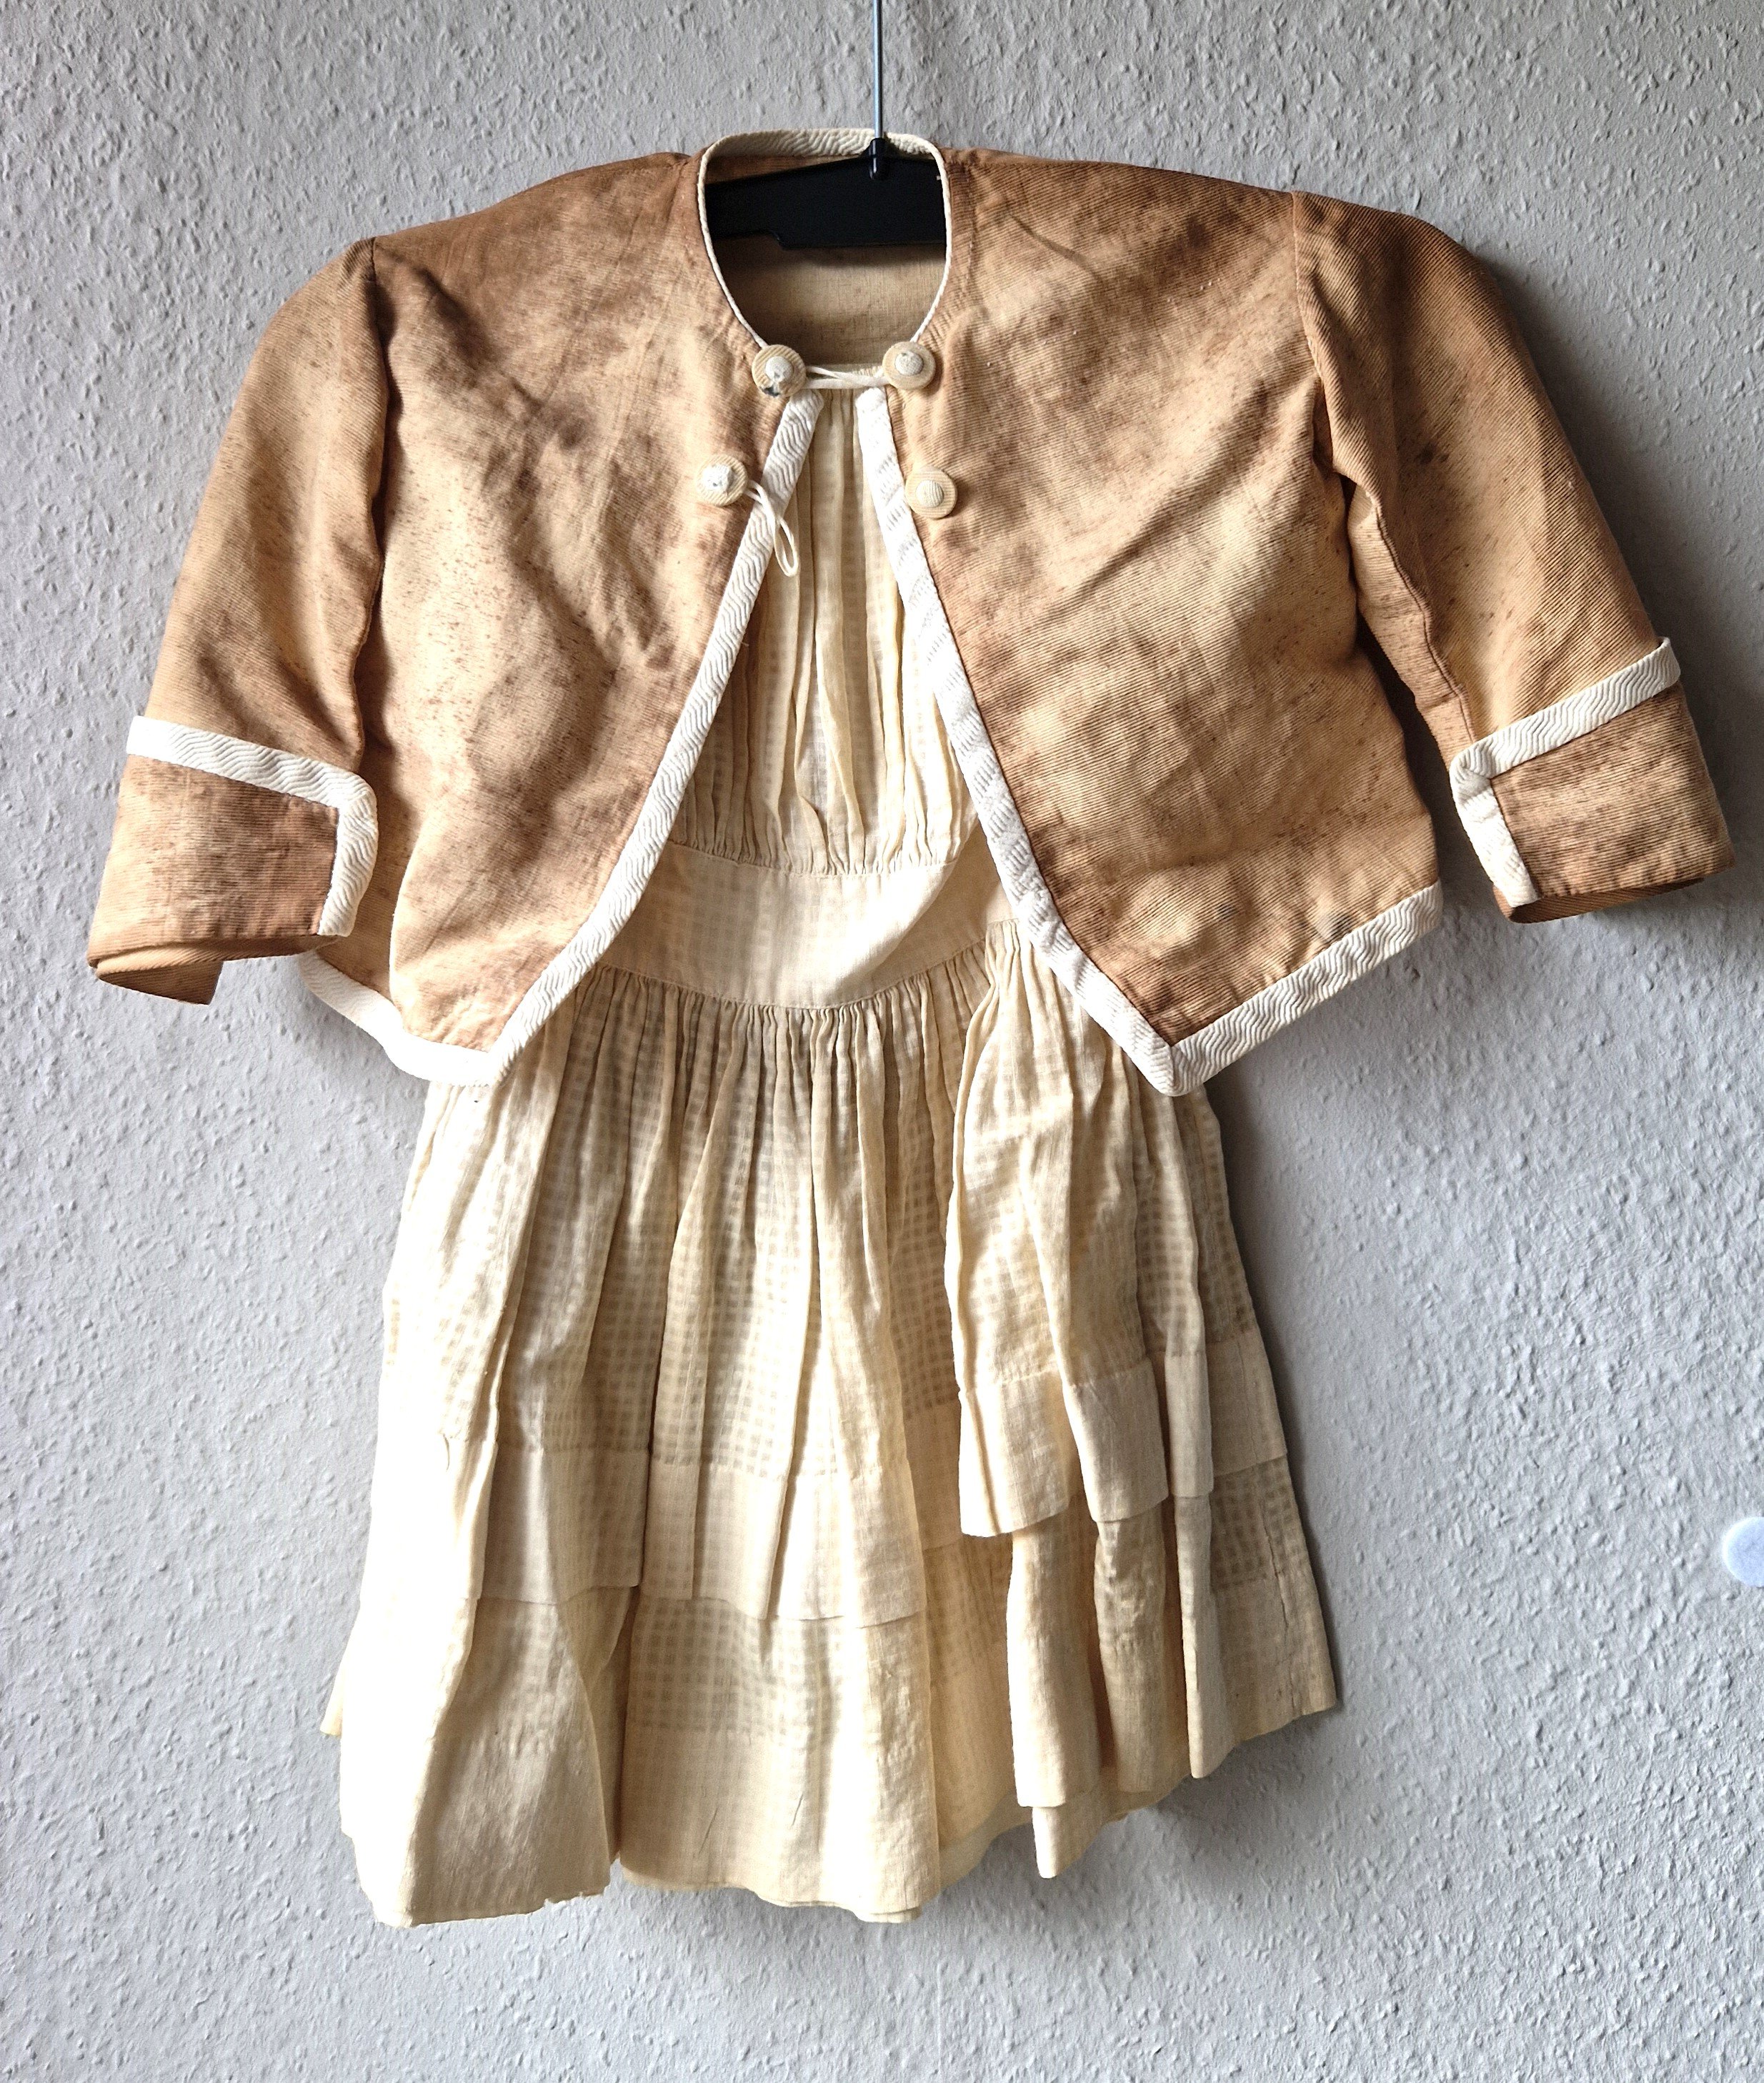 Mädchenkleid mit Jäckchen, 1920er-1950er Jahre (?) (Schloß Wernigerode GmbH RR-R)